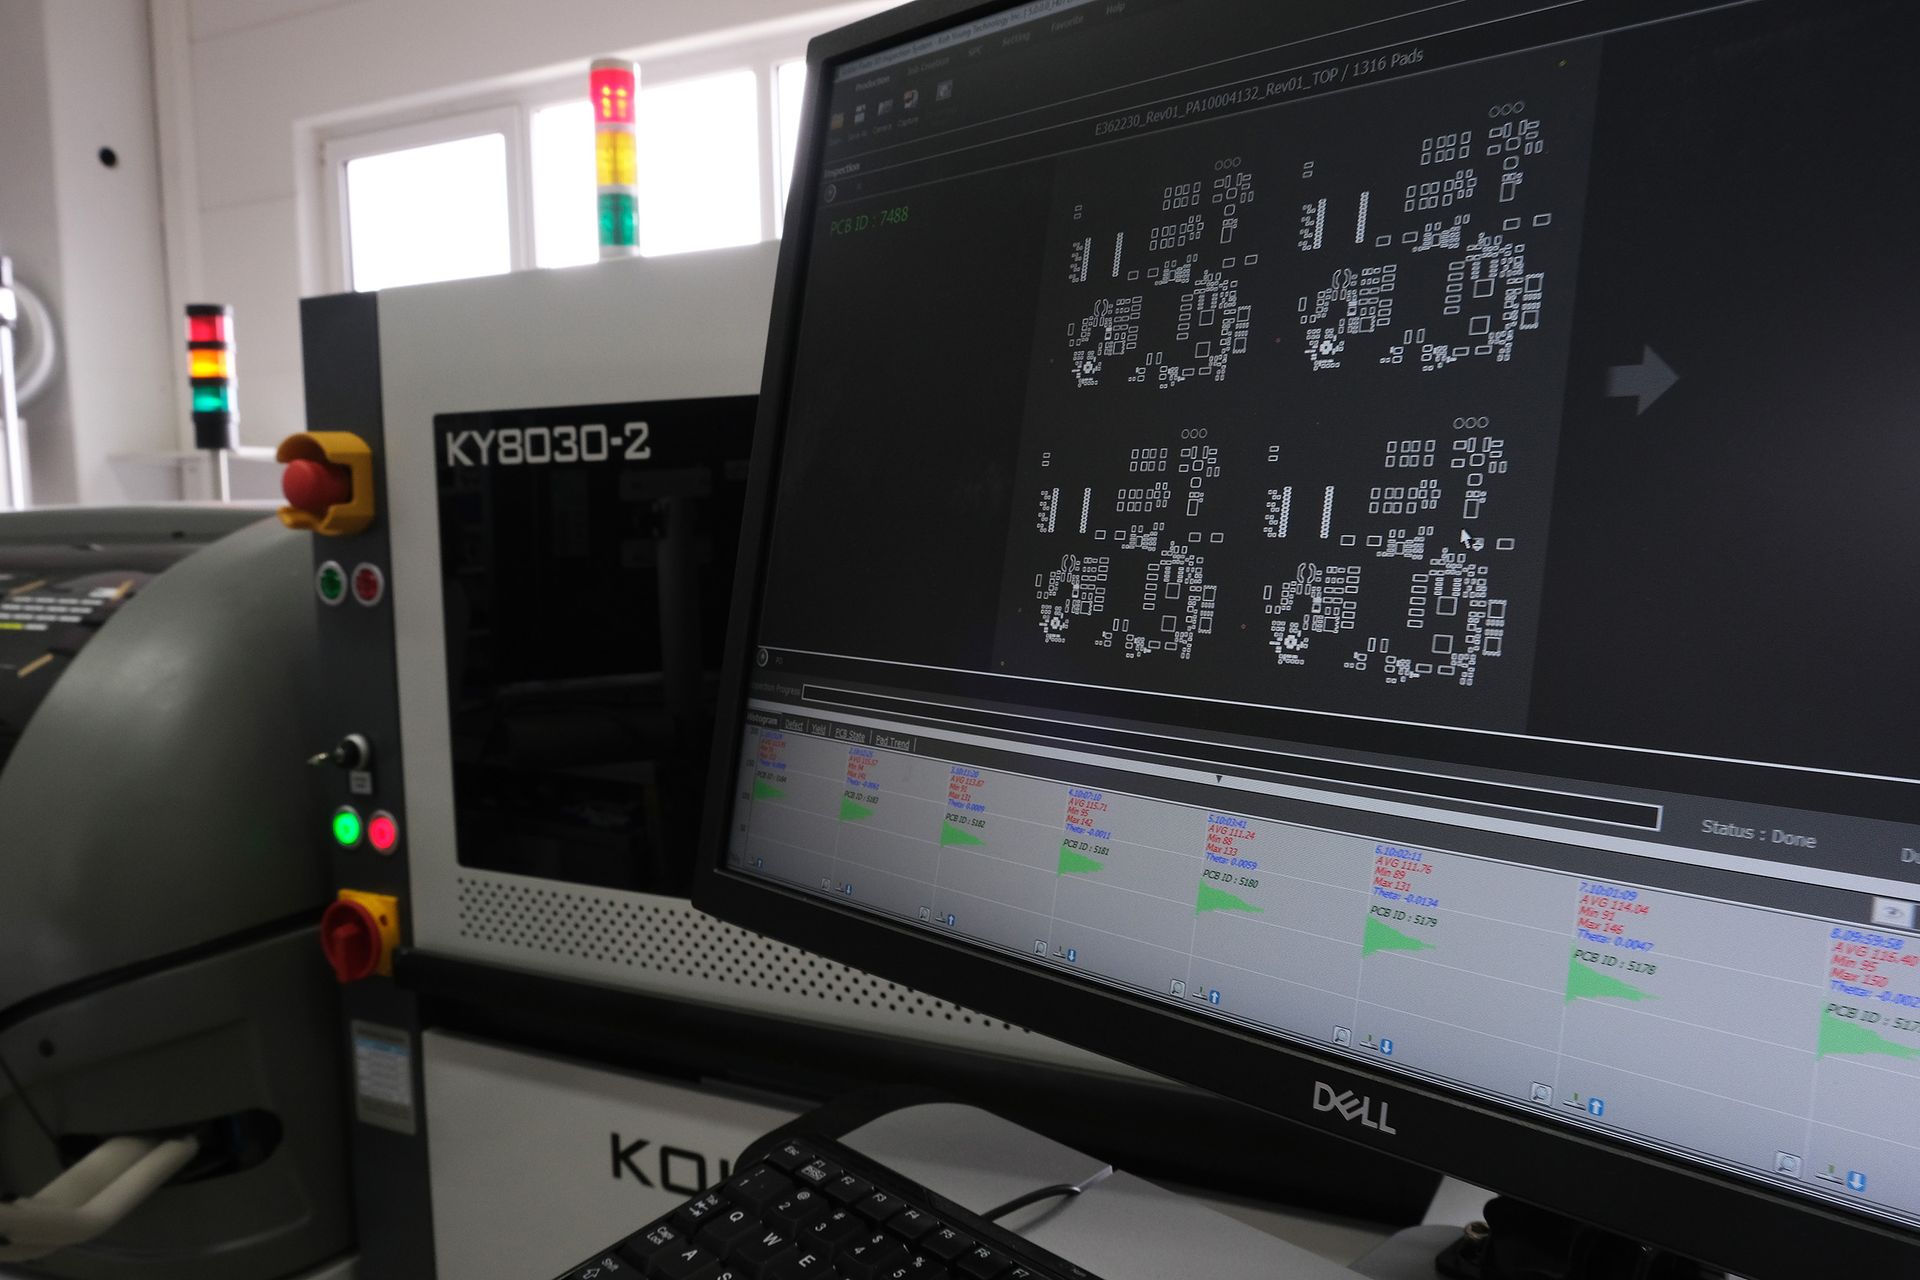 Das 3D SPI von Koh Young bei Christ Electronic Systems hebt die Produktqualität auf ein neues Niveau